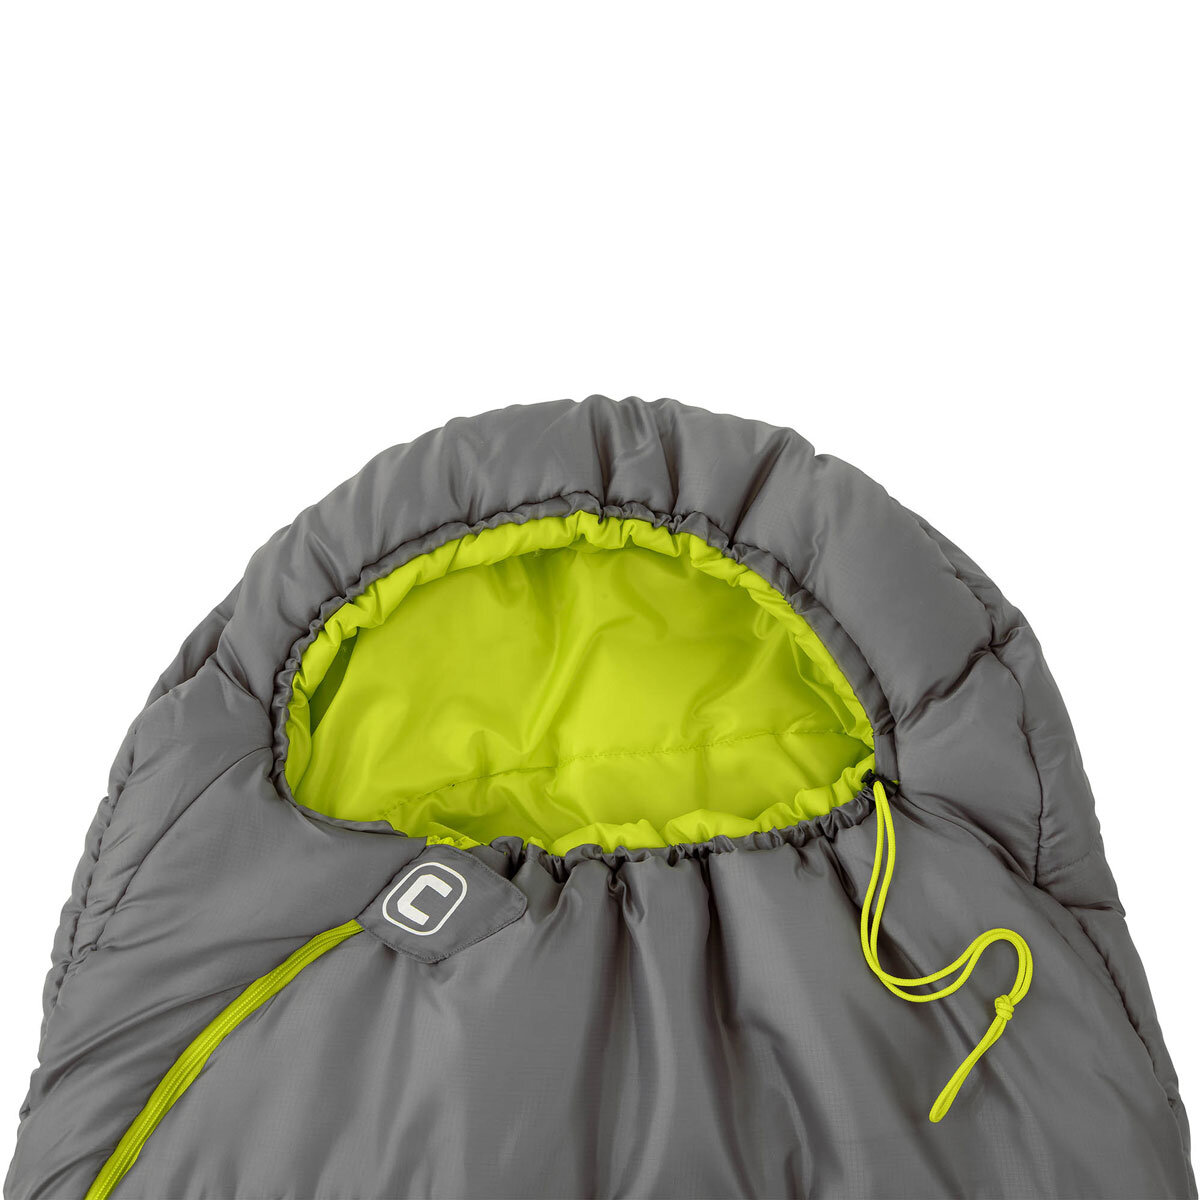 Core Hybrid Sleeping Bag with Adjustable Hood